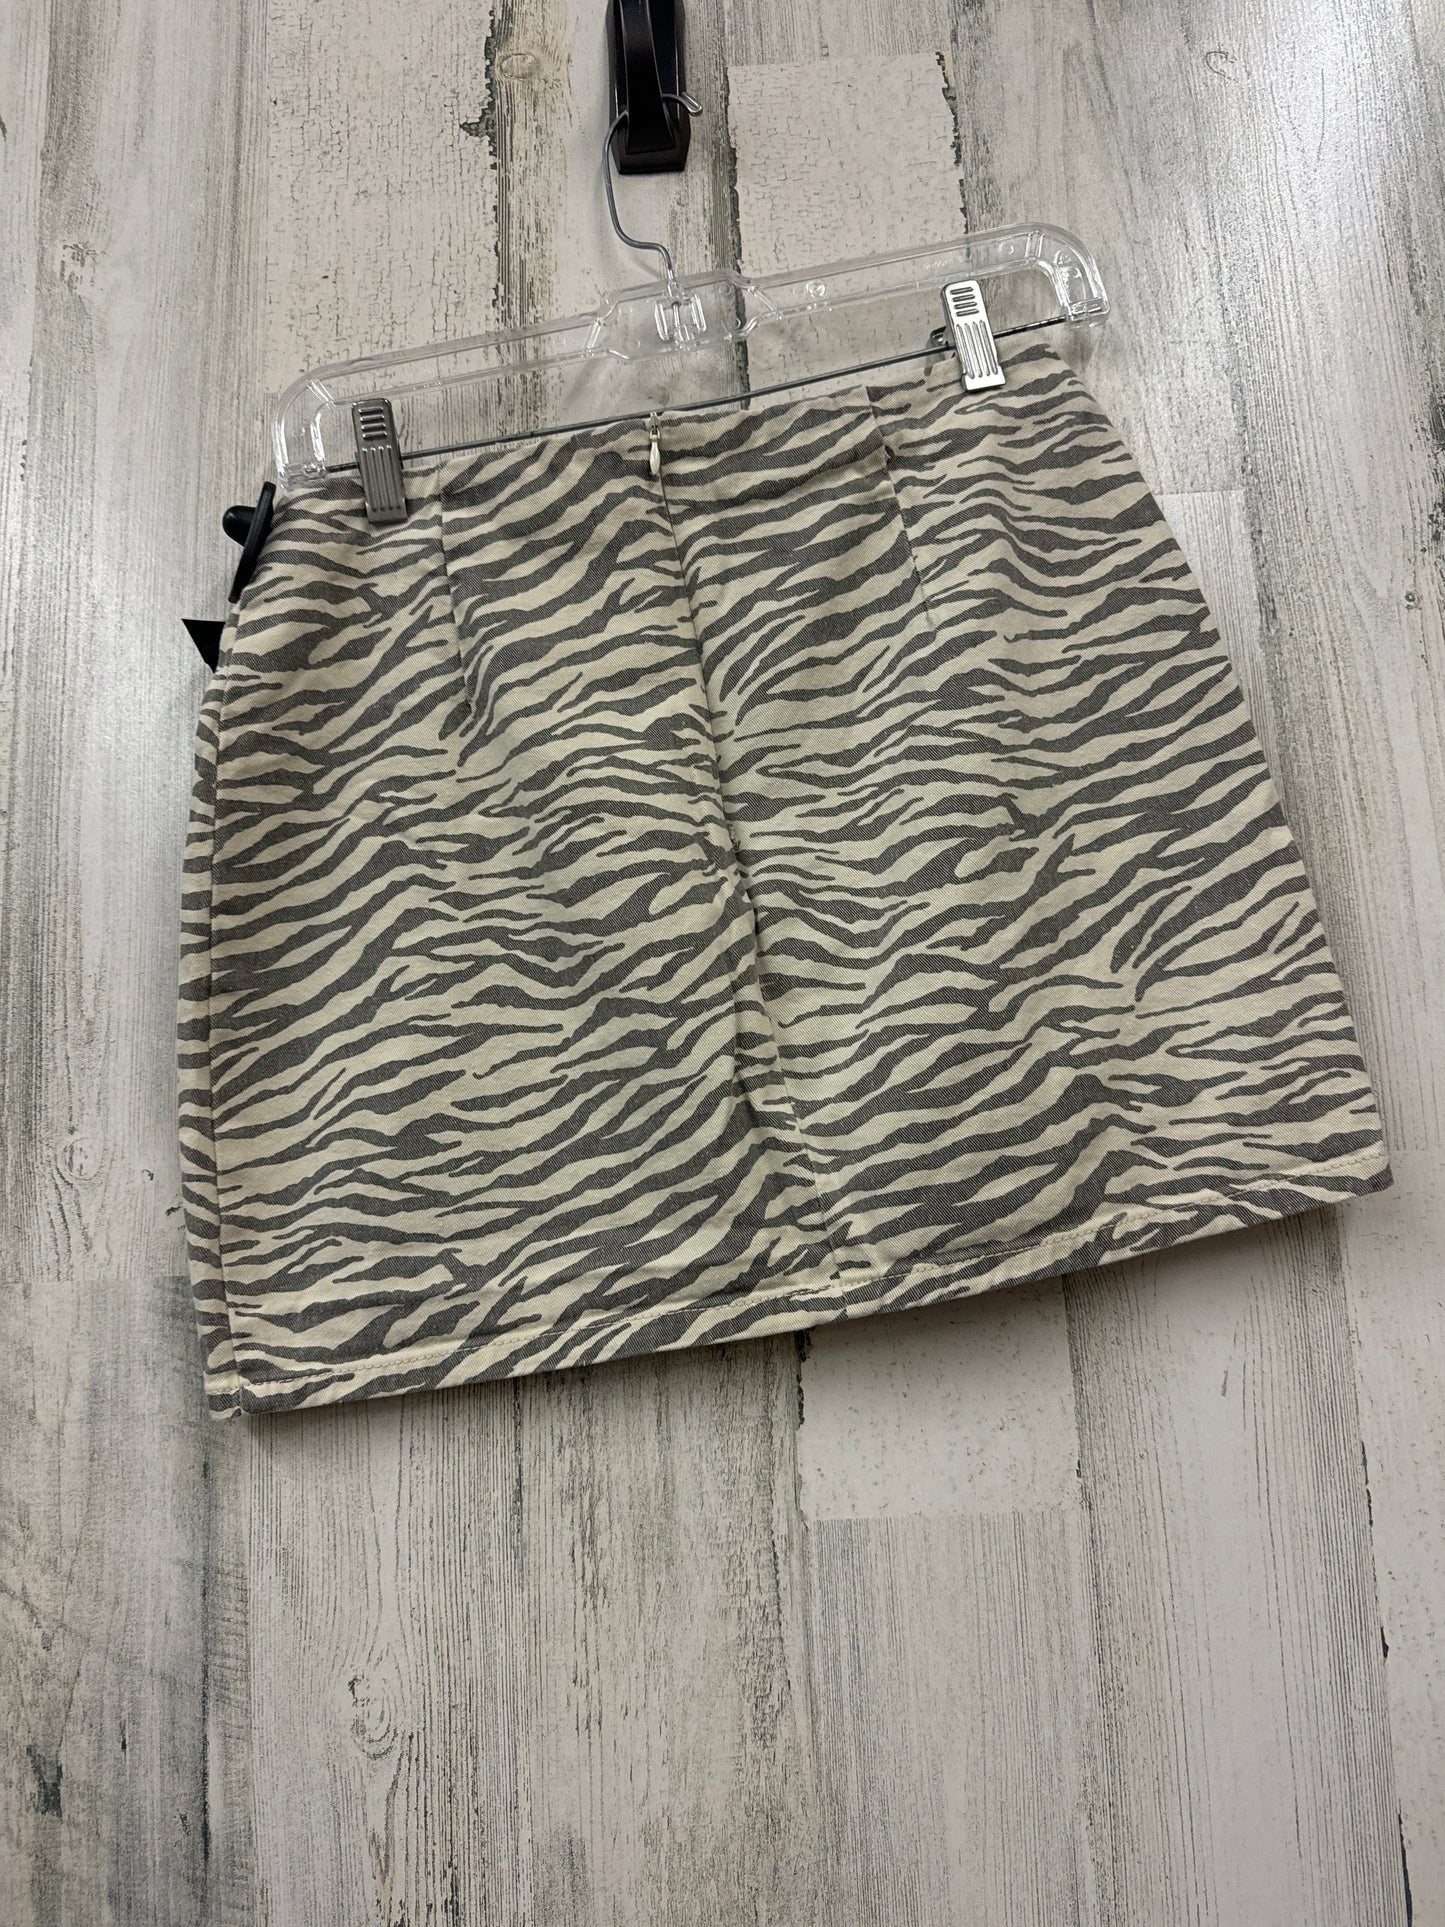 Zebra Print Skirt Mini & Short Altard State, Size M